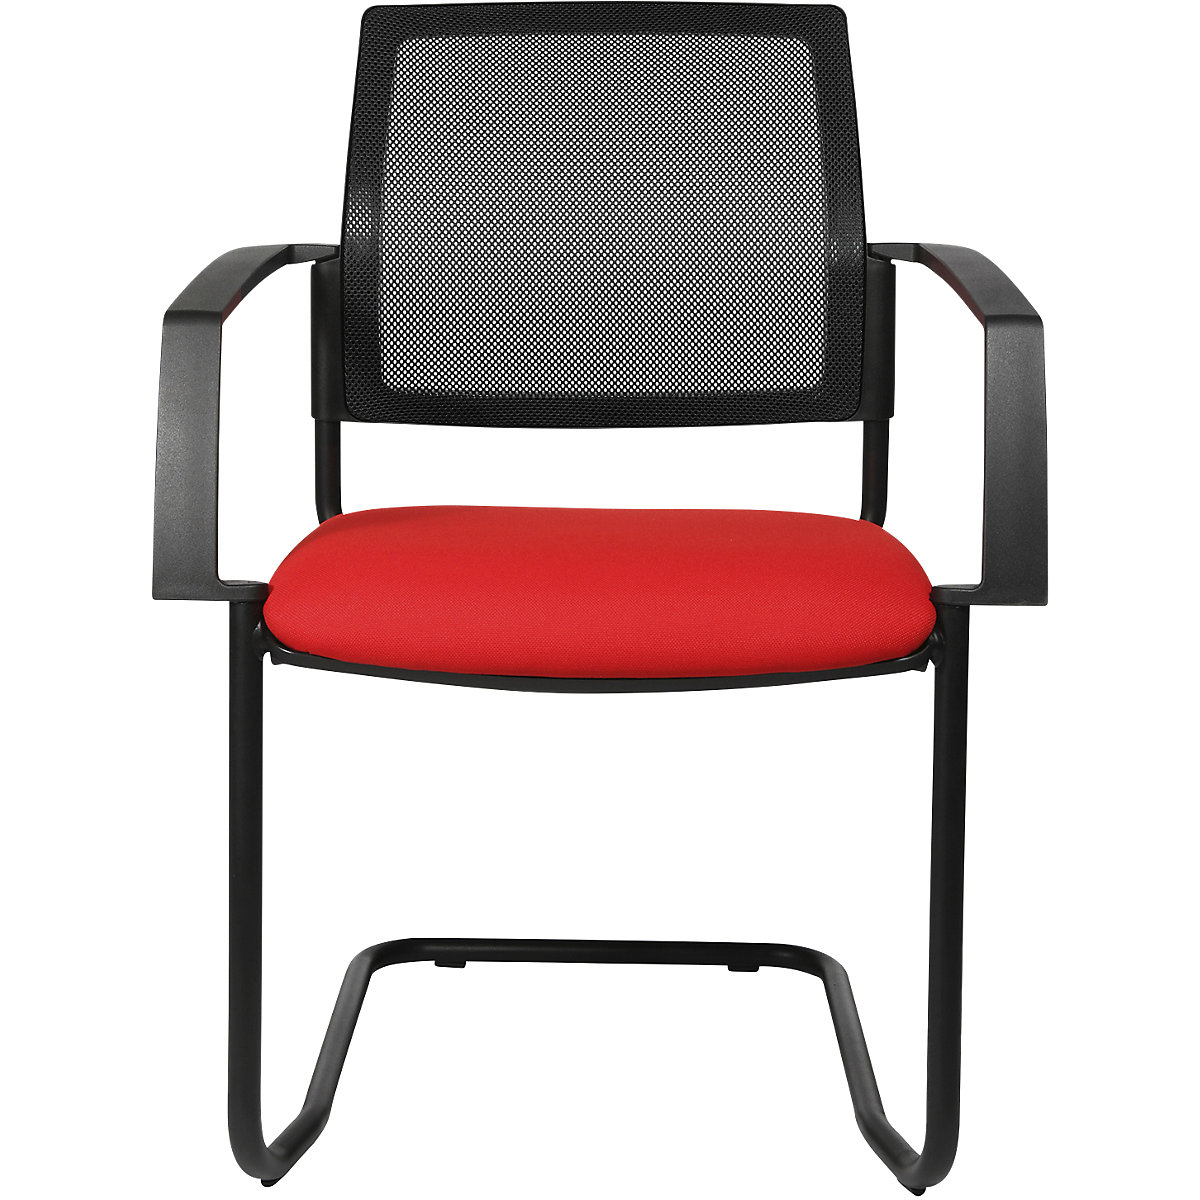 Mesh stapelstoel – Topstar, sledestoel, VE = 2 stuks, zitting rood, frame zwart-6